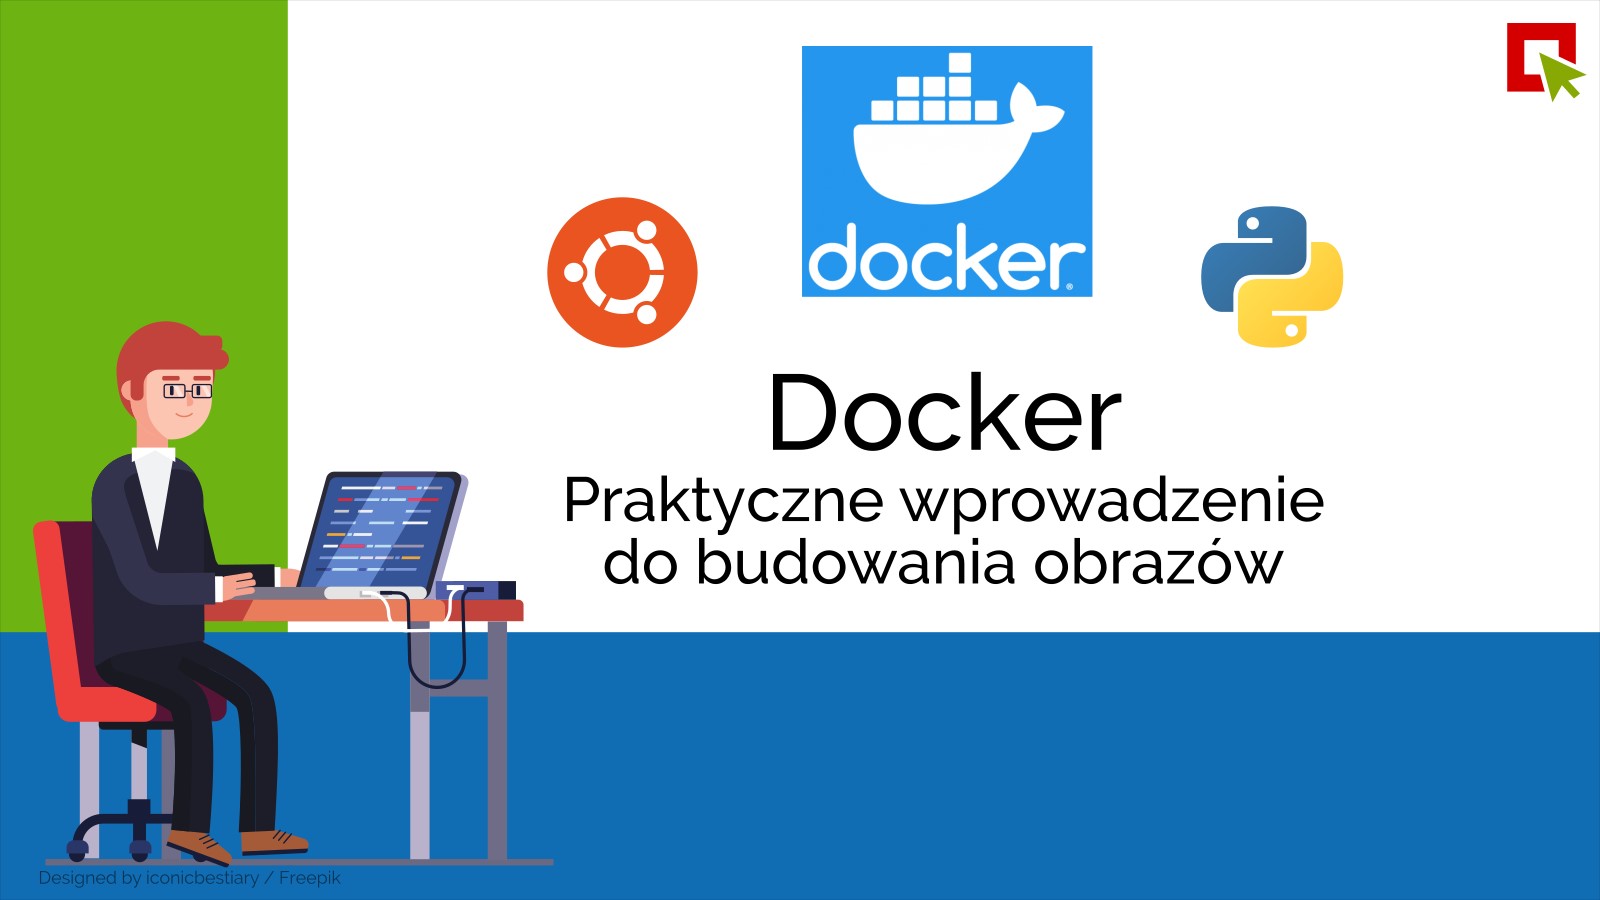 Docker – Praktyczne wprowadzenie do budowania obrazów